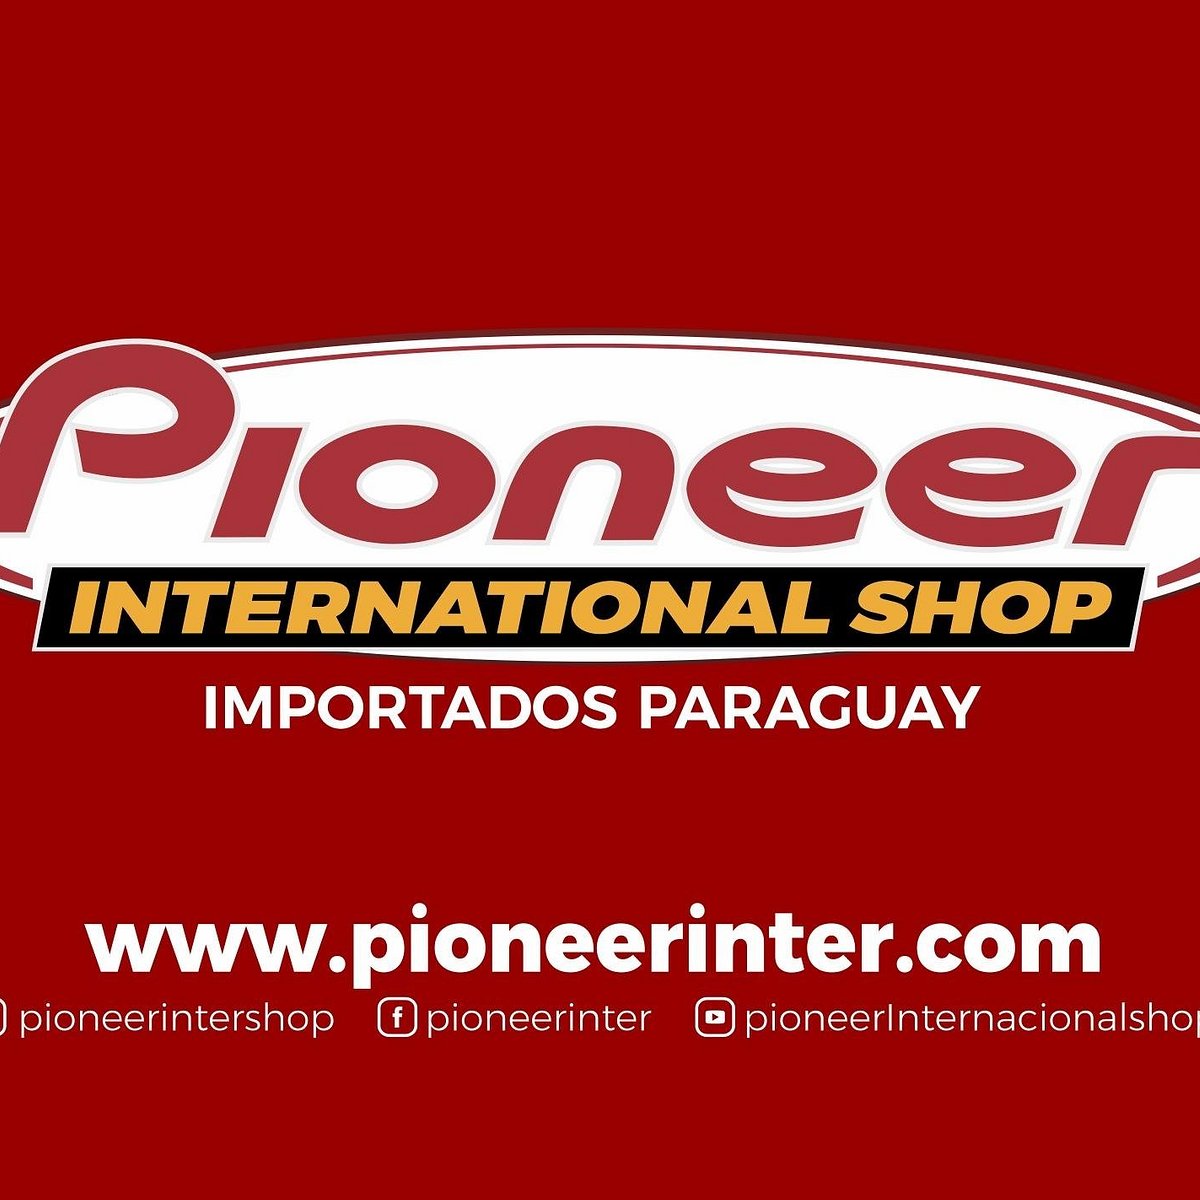 GAMES - Pioneer Inter Shop - Eletronicos no Paraguai com mais de